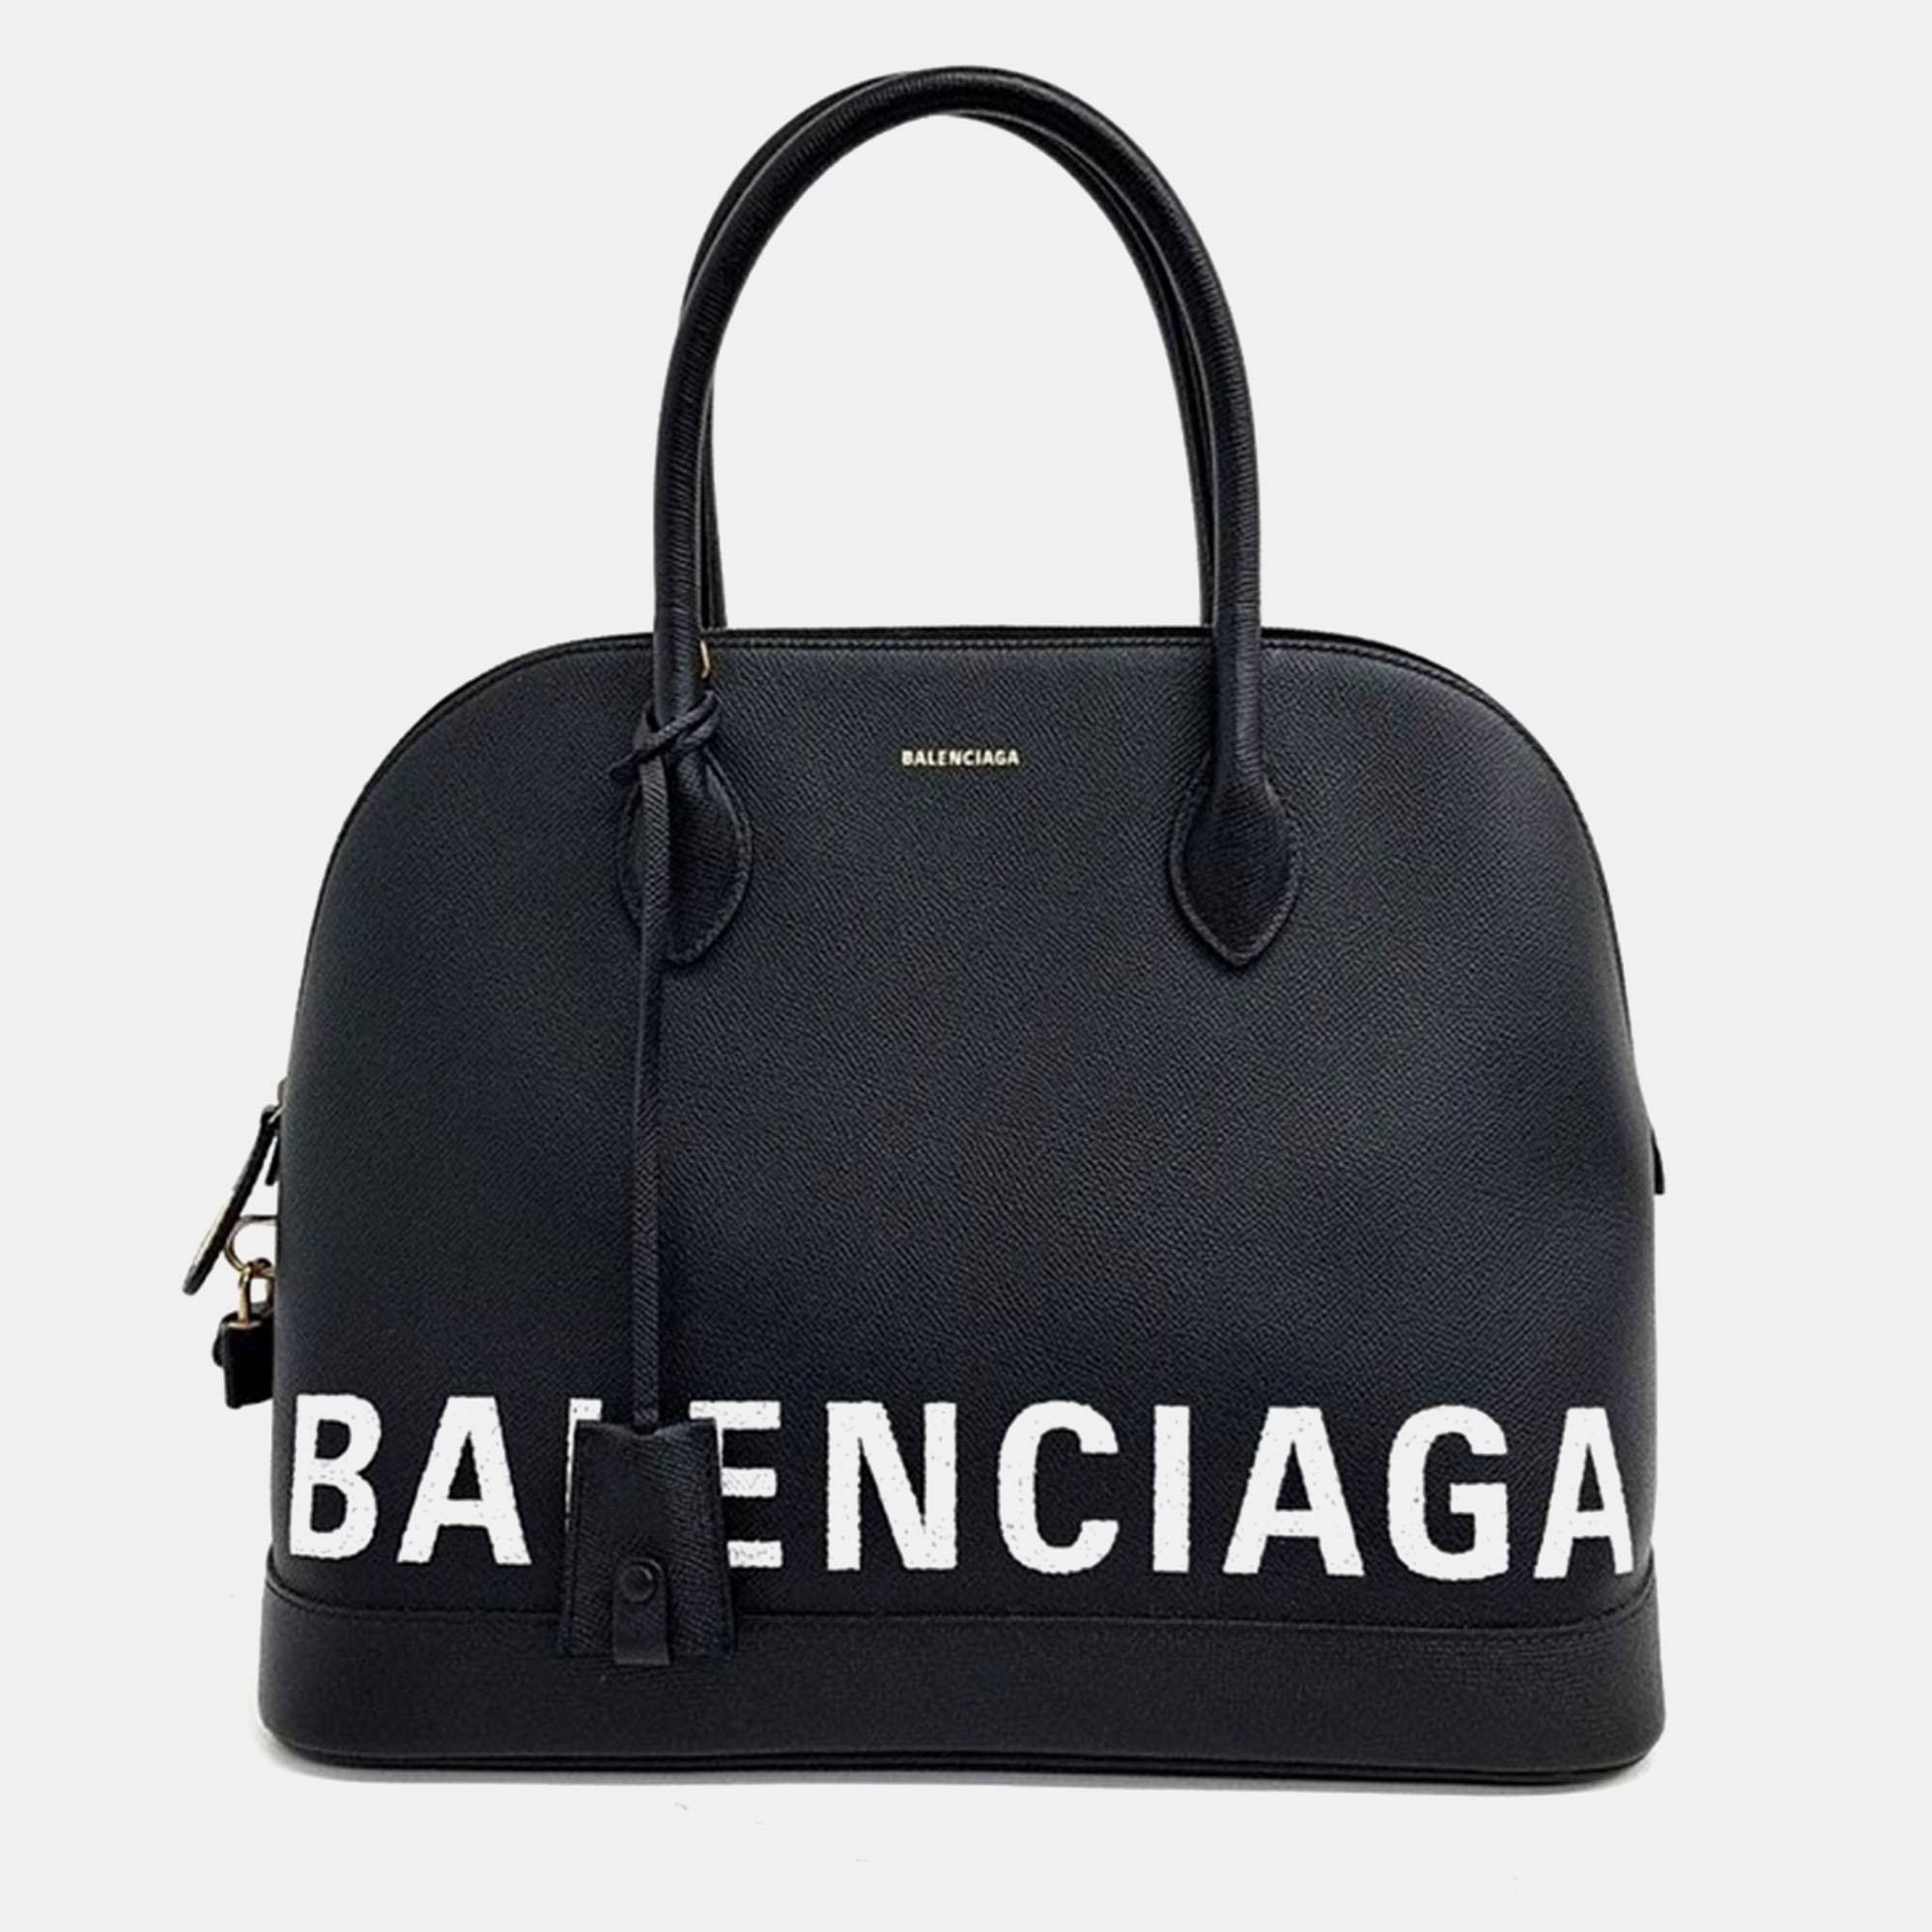 Balenciaga ville top handle bag